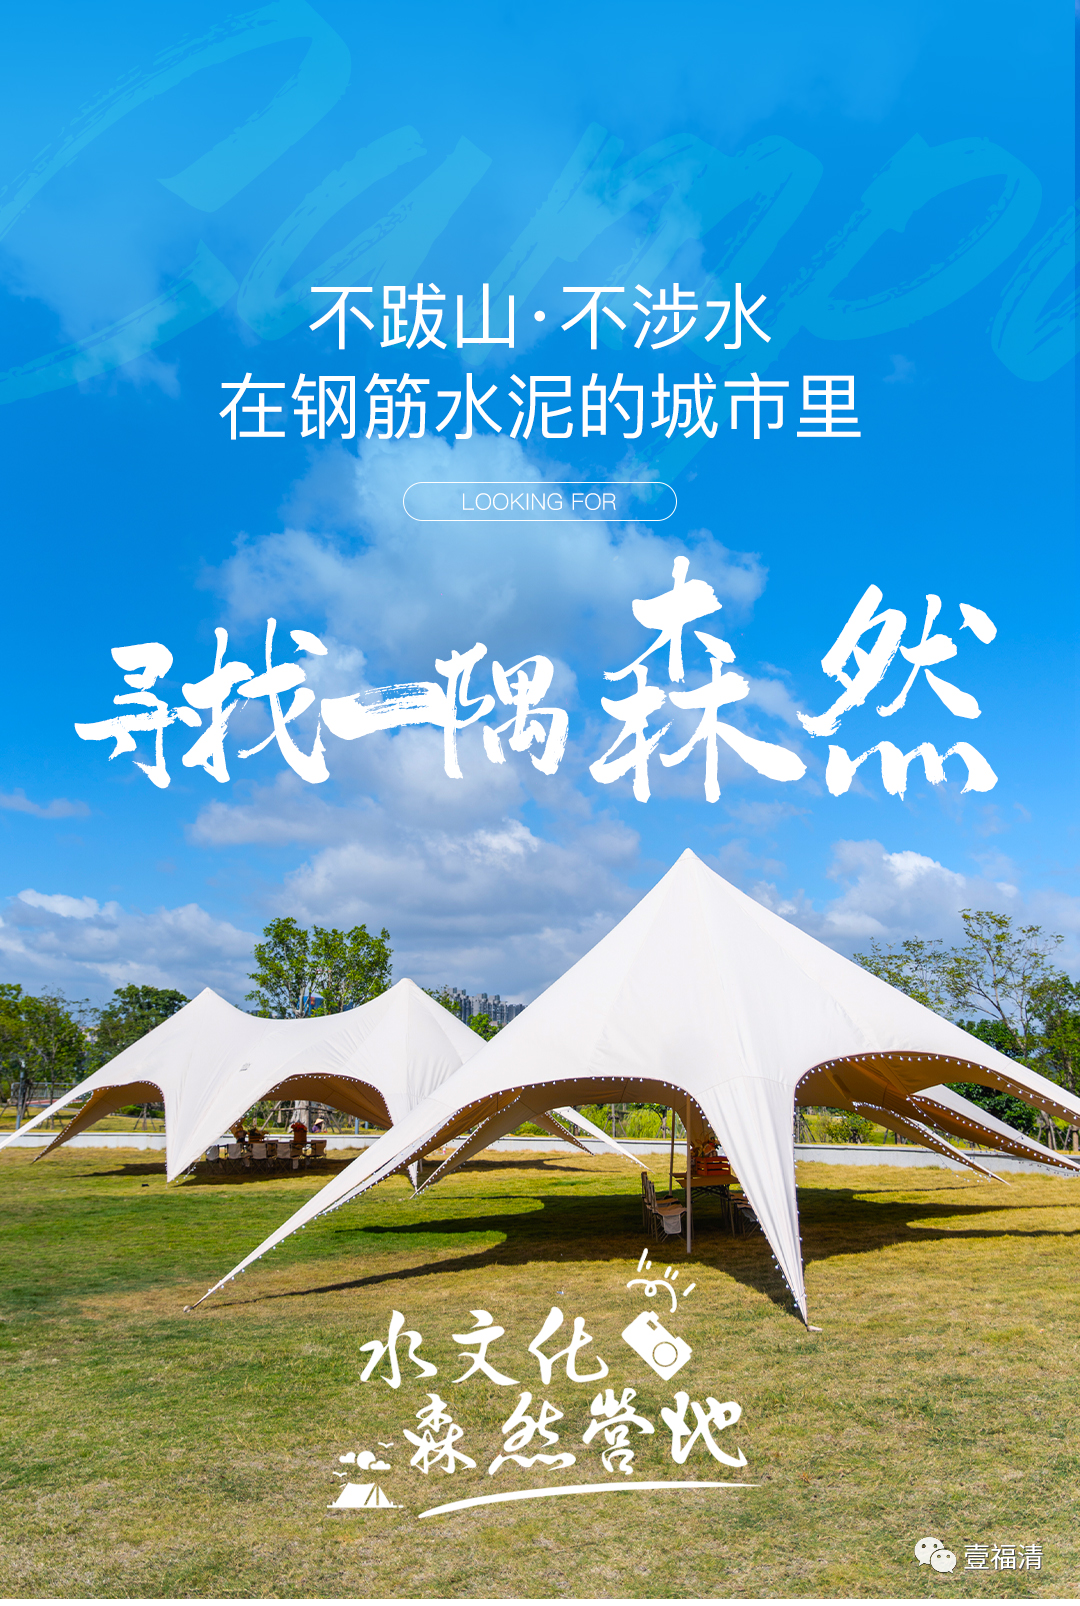 免費！福清城區公園露營地來了！